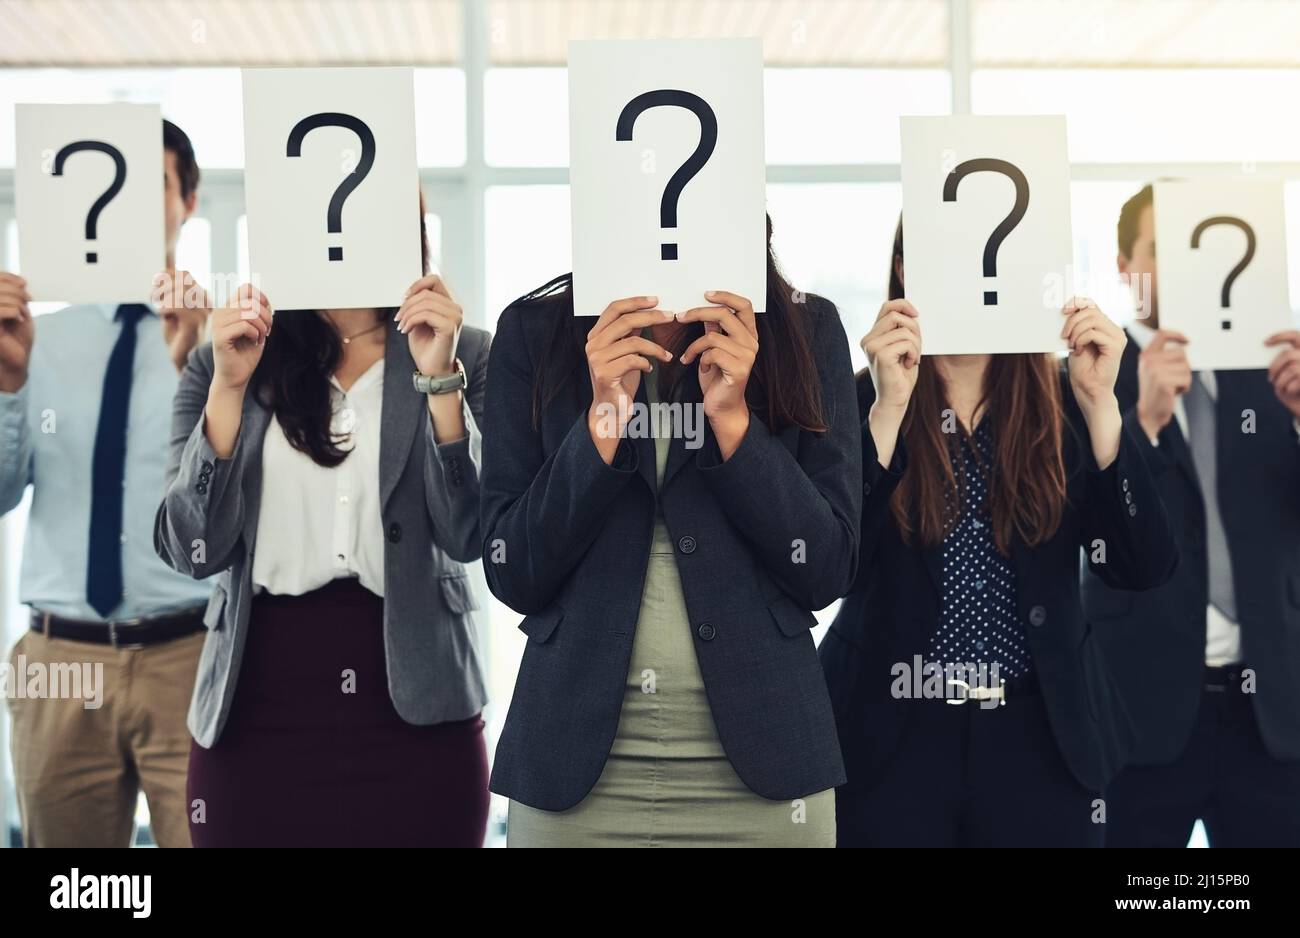 Haben Sie Antworten, weil wir Fragen haben? Aufnahme einer Gruppe von Geschäftsleuten, die Fragezeichen vor ihren Gesichtern halten. Stockfoto